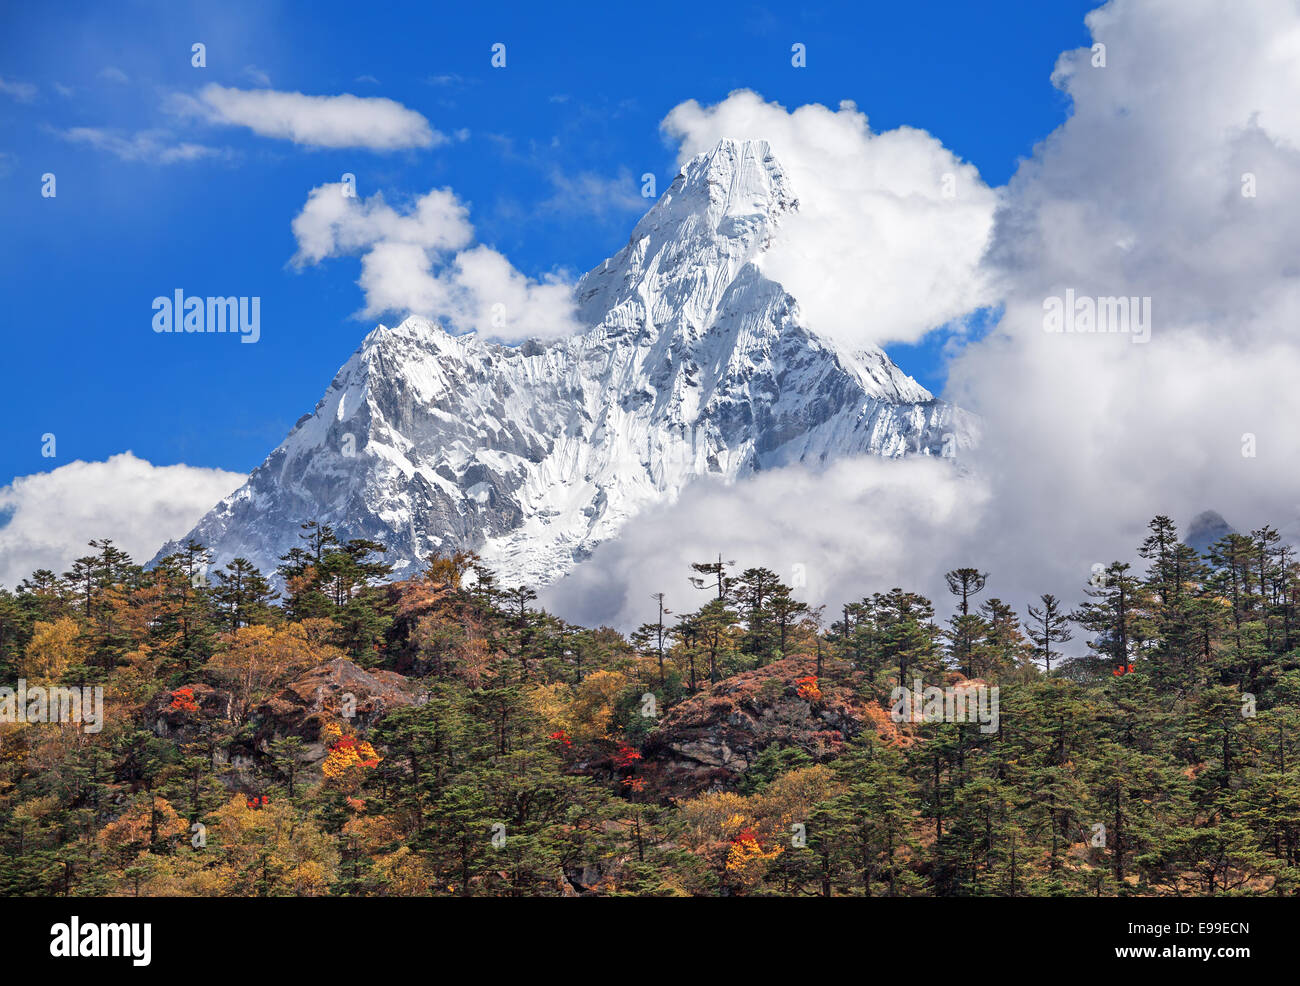 Forêt d'automne sur l'arrière-plan de la crête sacrée Ama Dablam (6814 m) au Népal, l'Himalaya. Banque D'Images